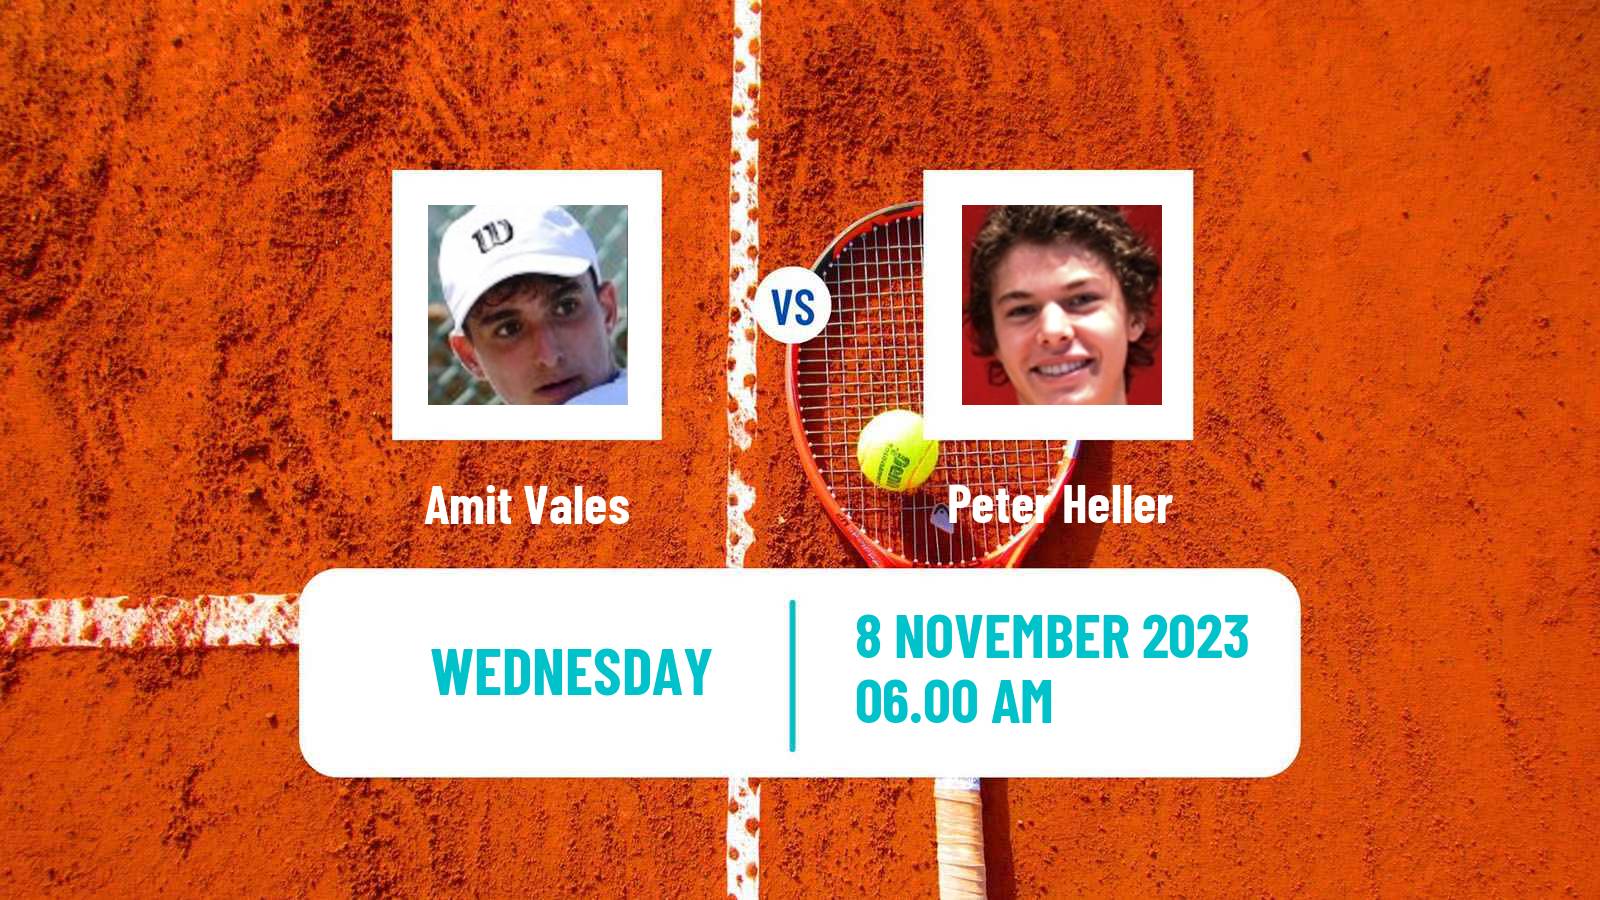 Tennis ITF M25 Heraklion 2 Men 2023 Amit Vales - Peter Heller